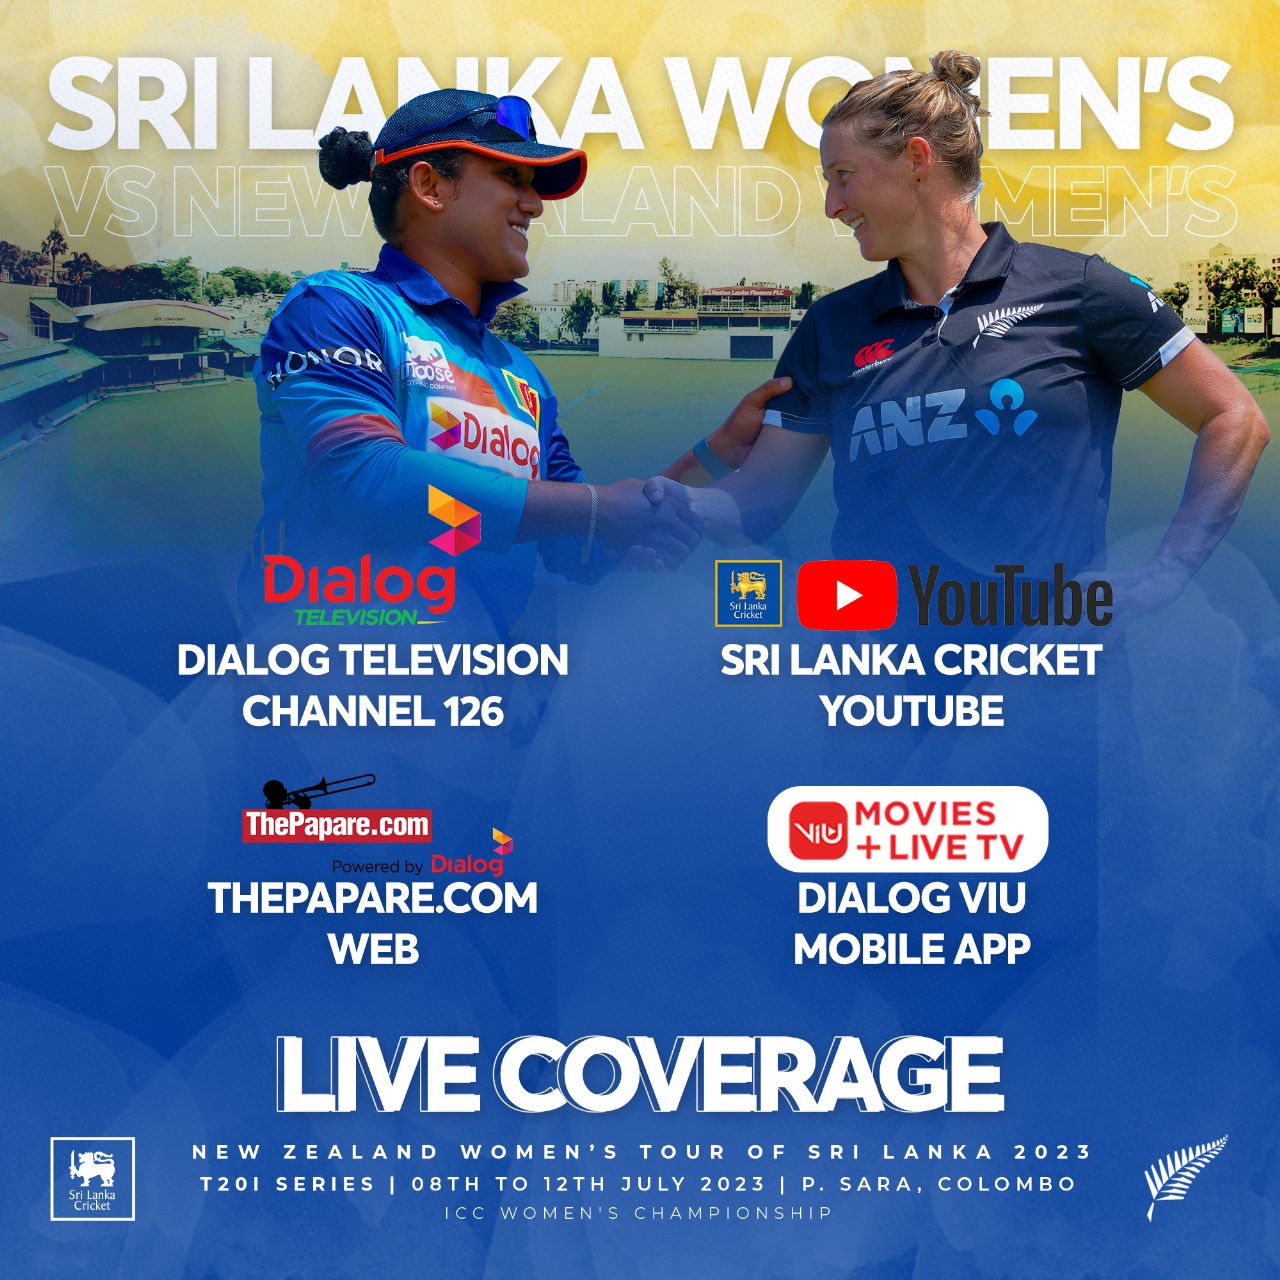 Sri Lanka Cricket 🇱🇰 on Twitter